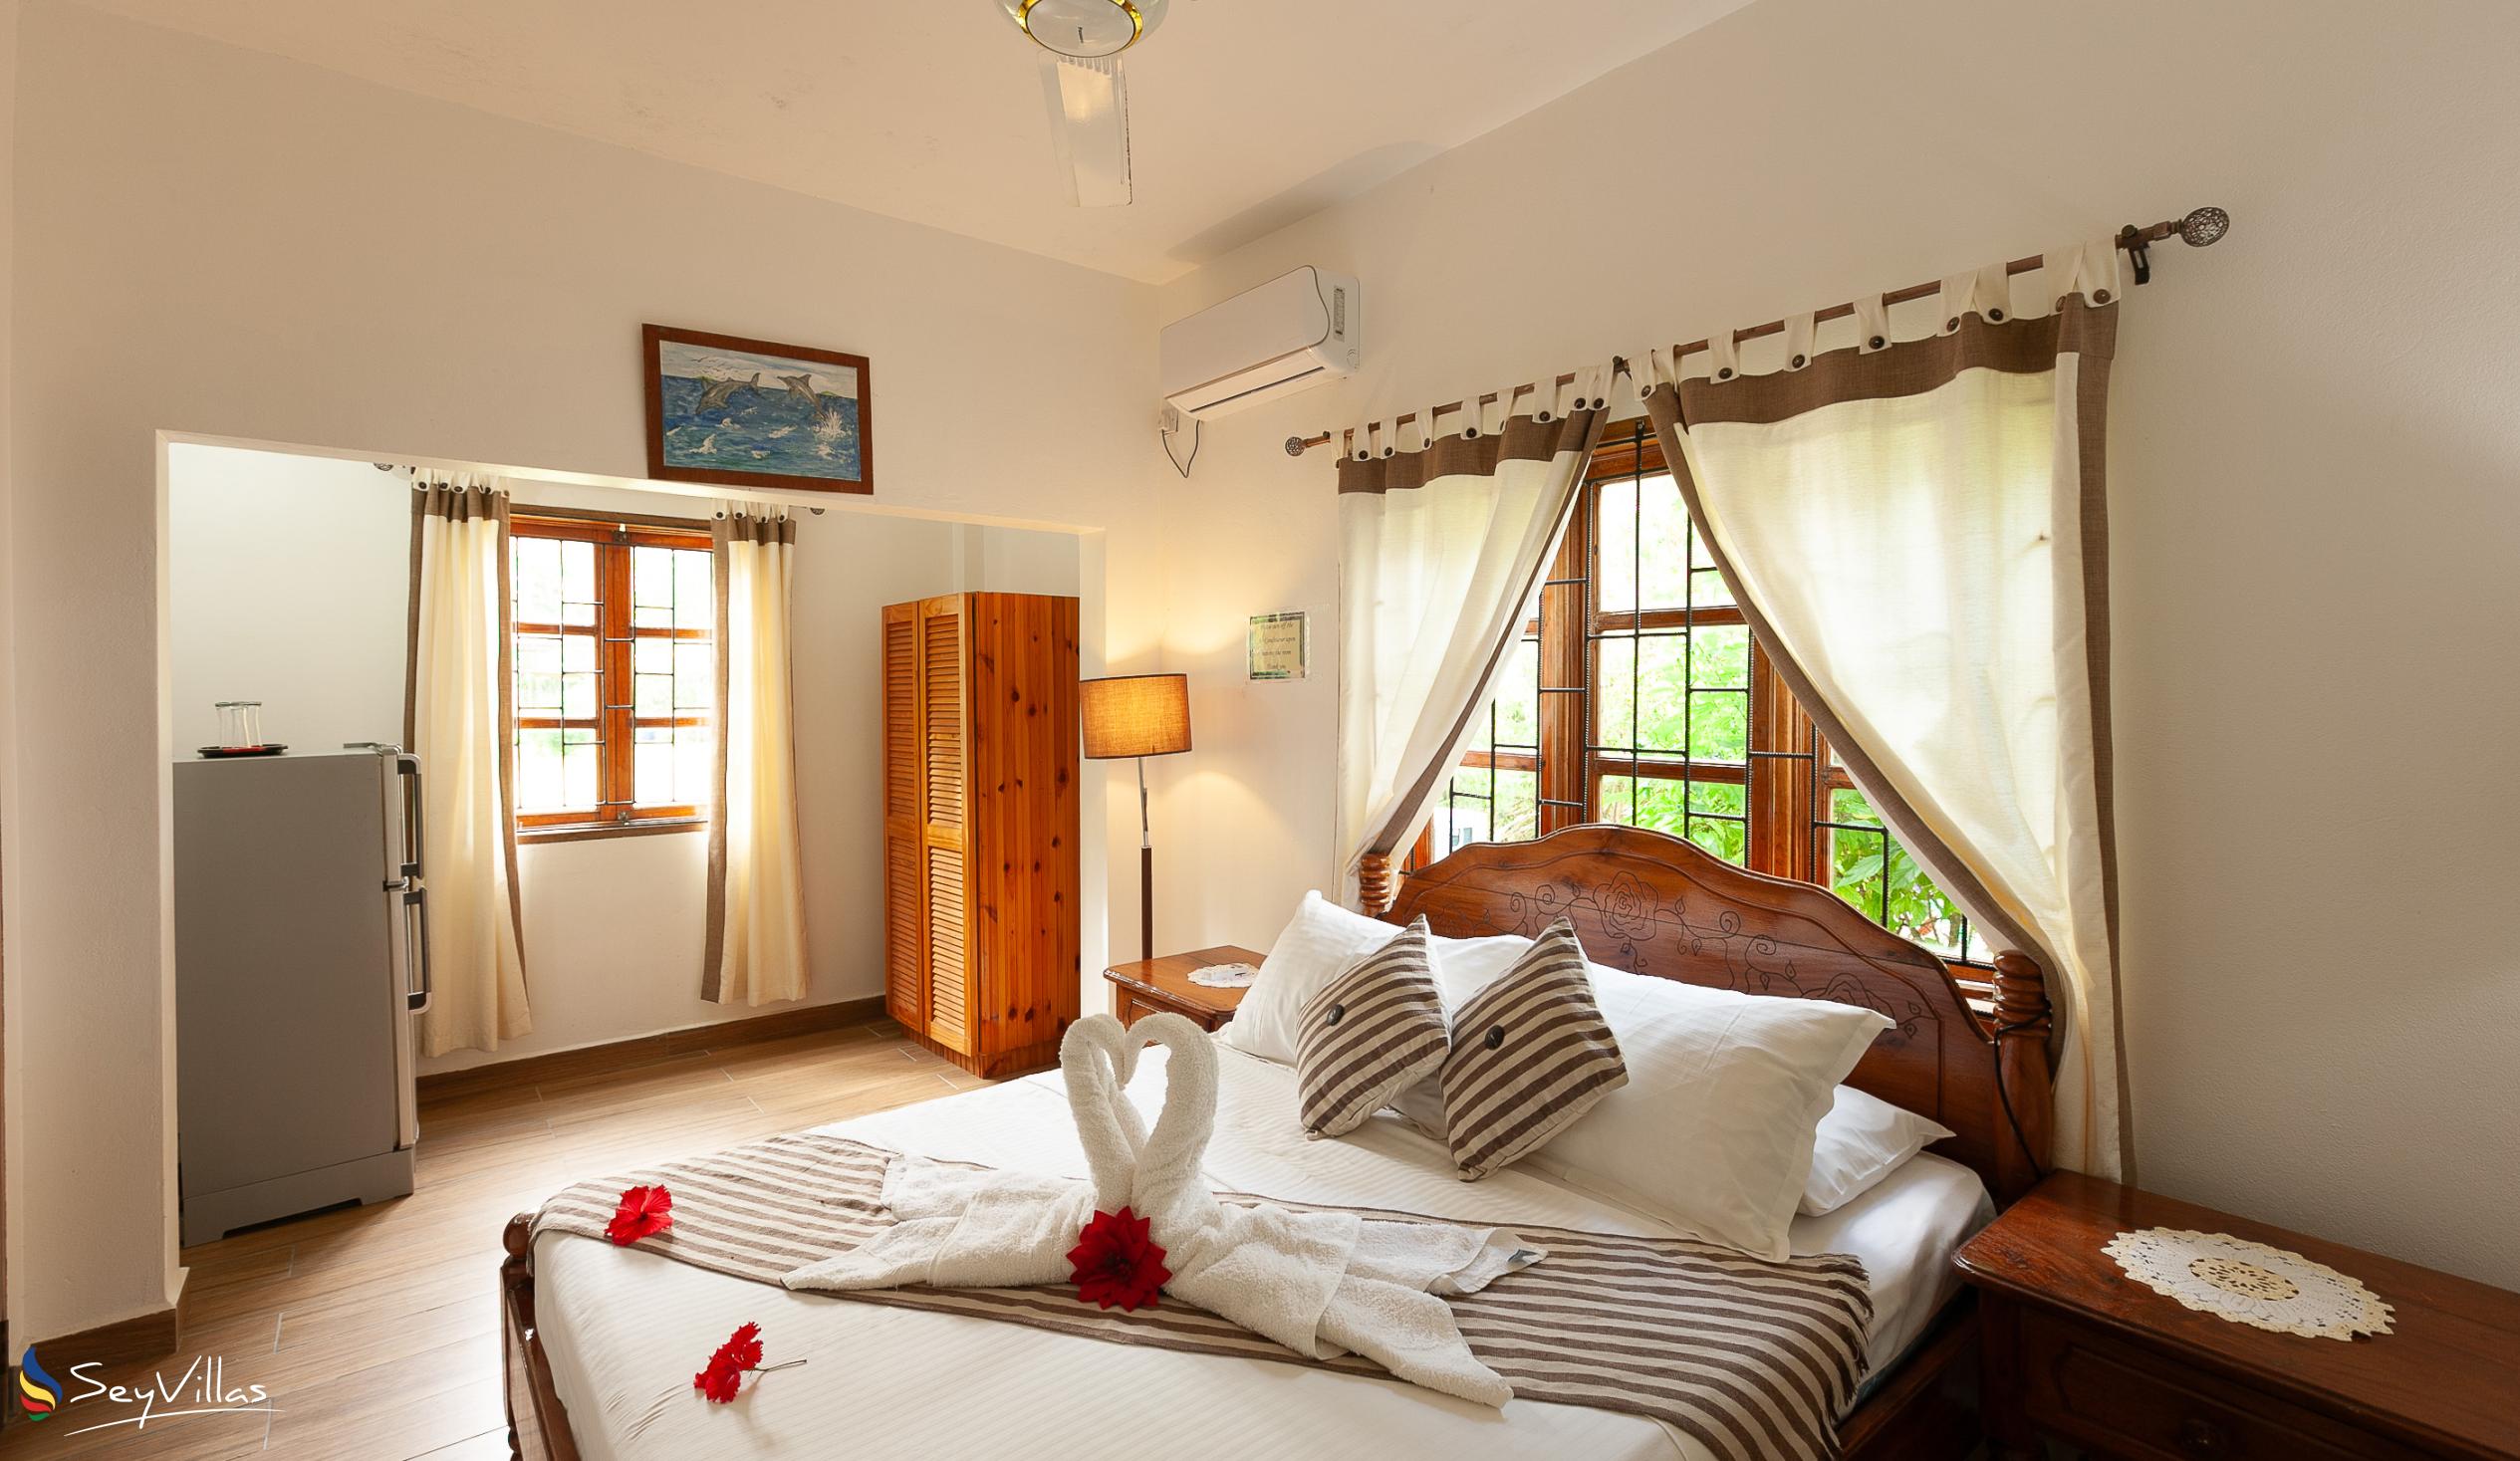 Photo 74: Tannette's Villa - Standard Double Room - La Digue (Seychelles)